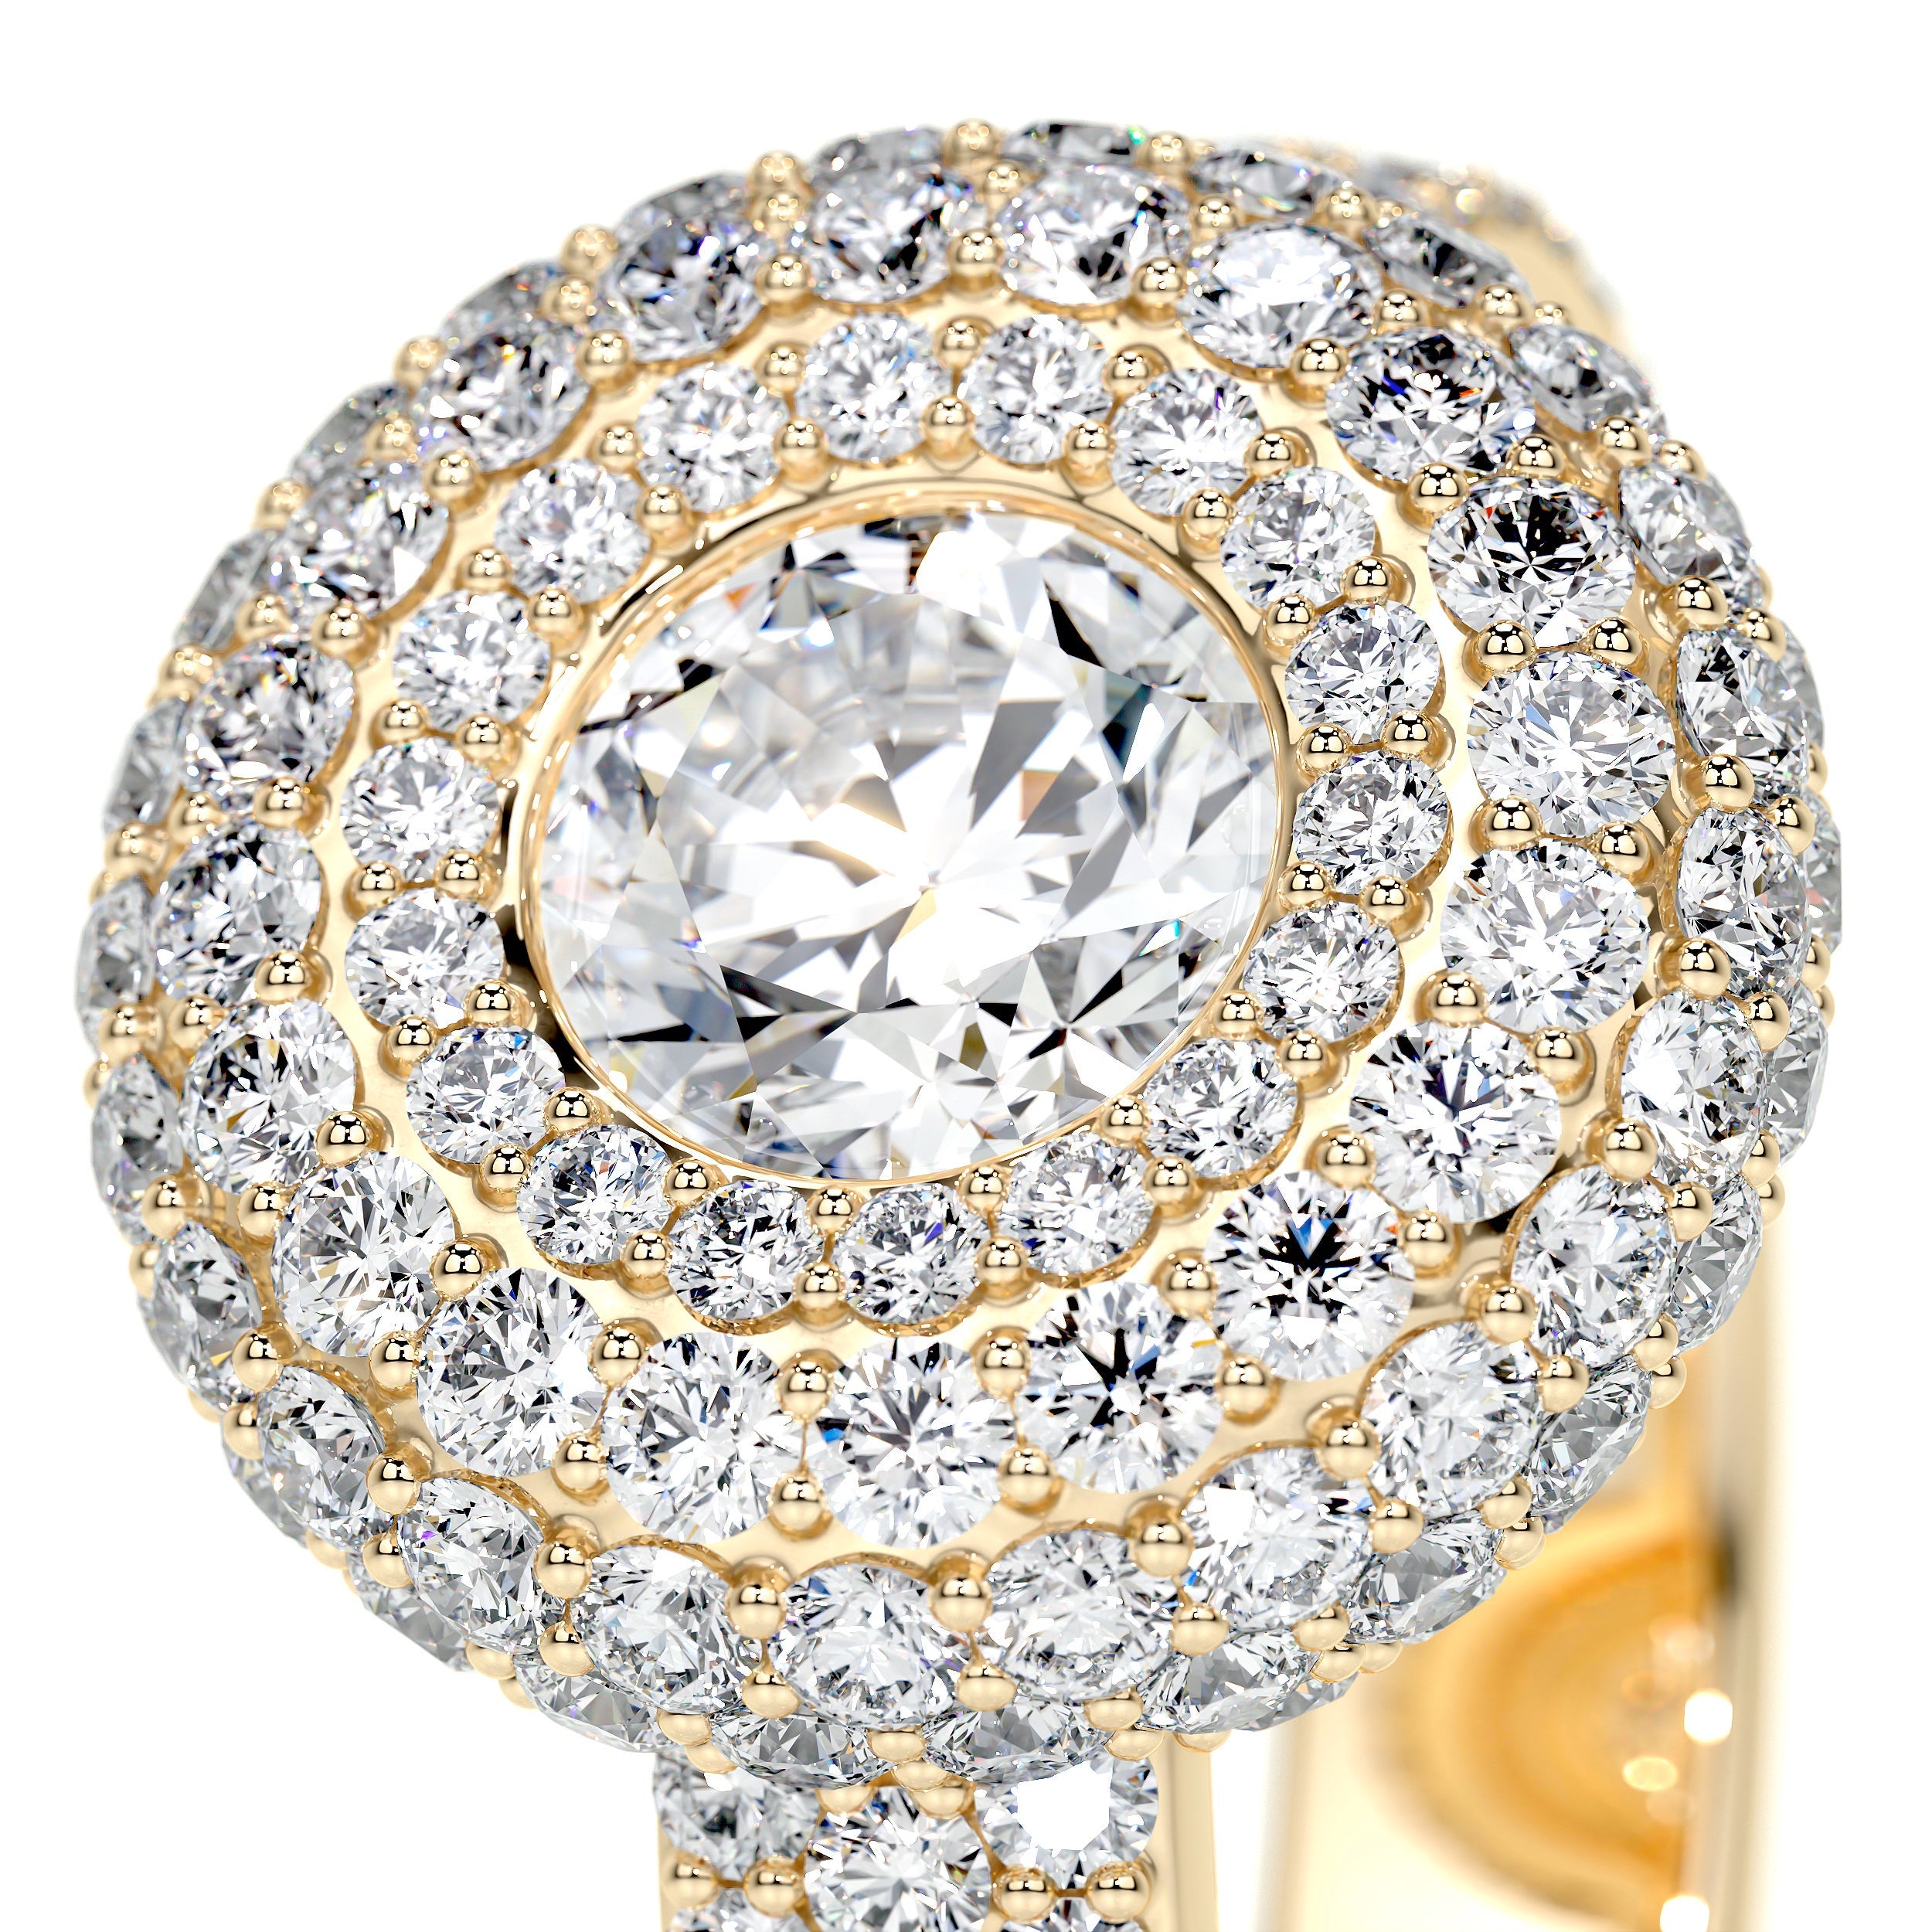 Reagan Lab Grown Diamond Ring   (2.25 Carat) -18K Yellow Gold